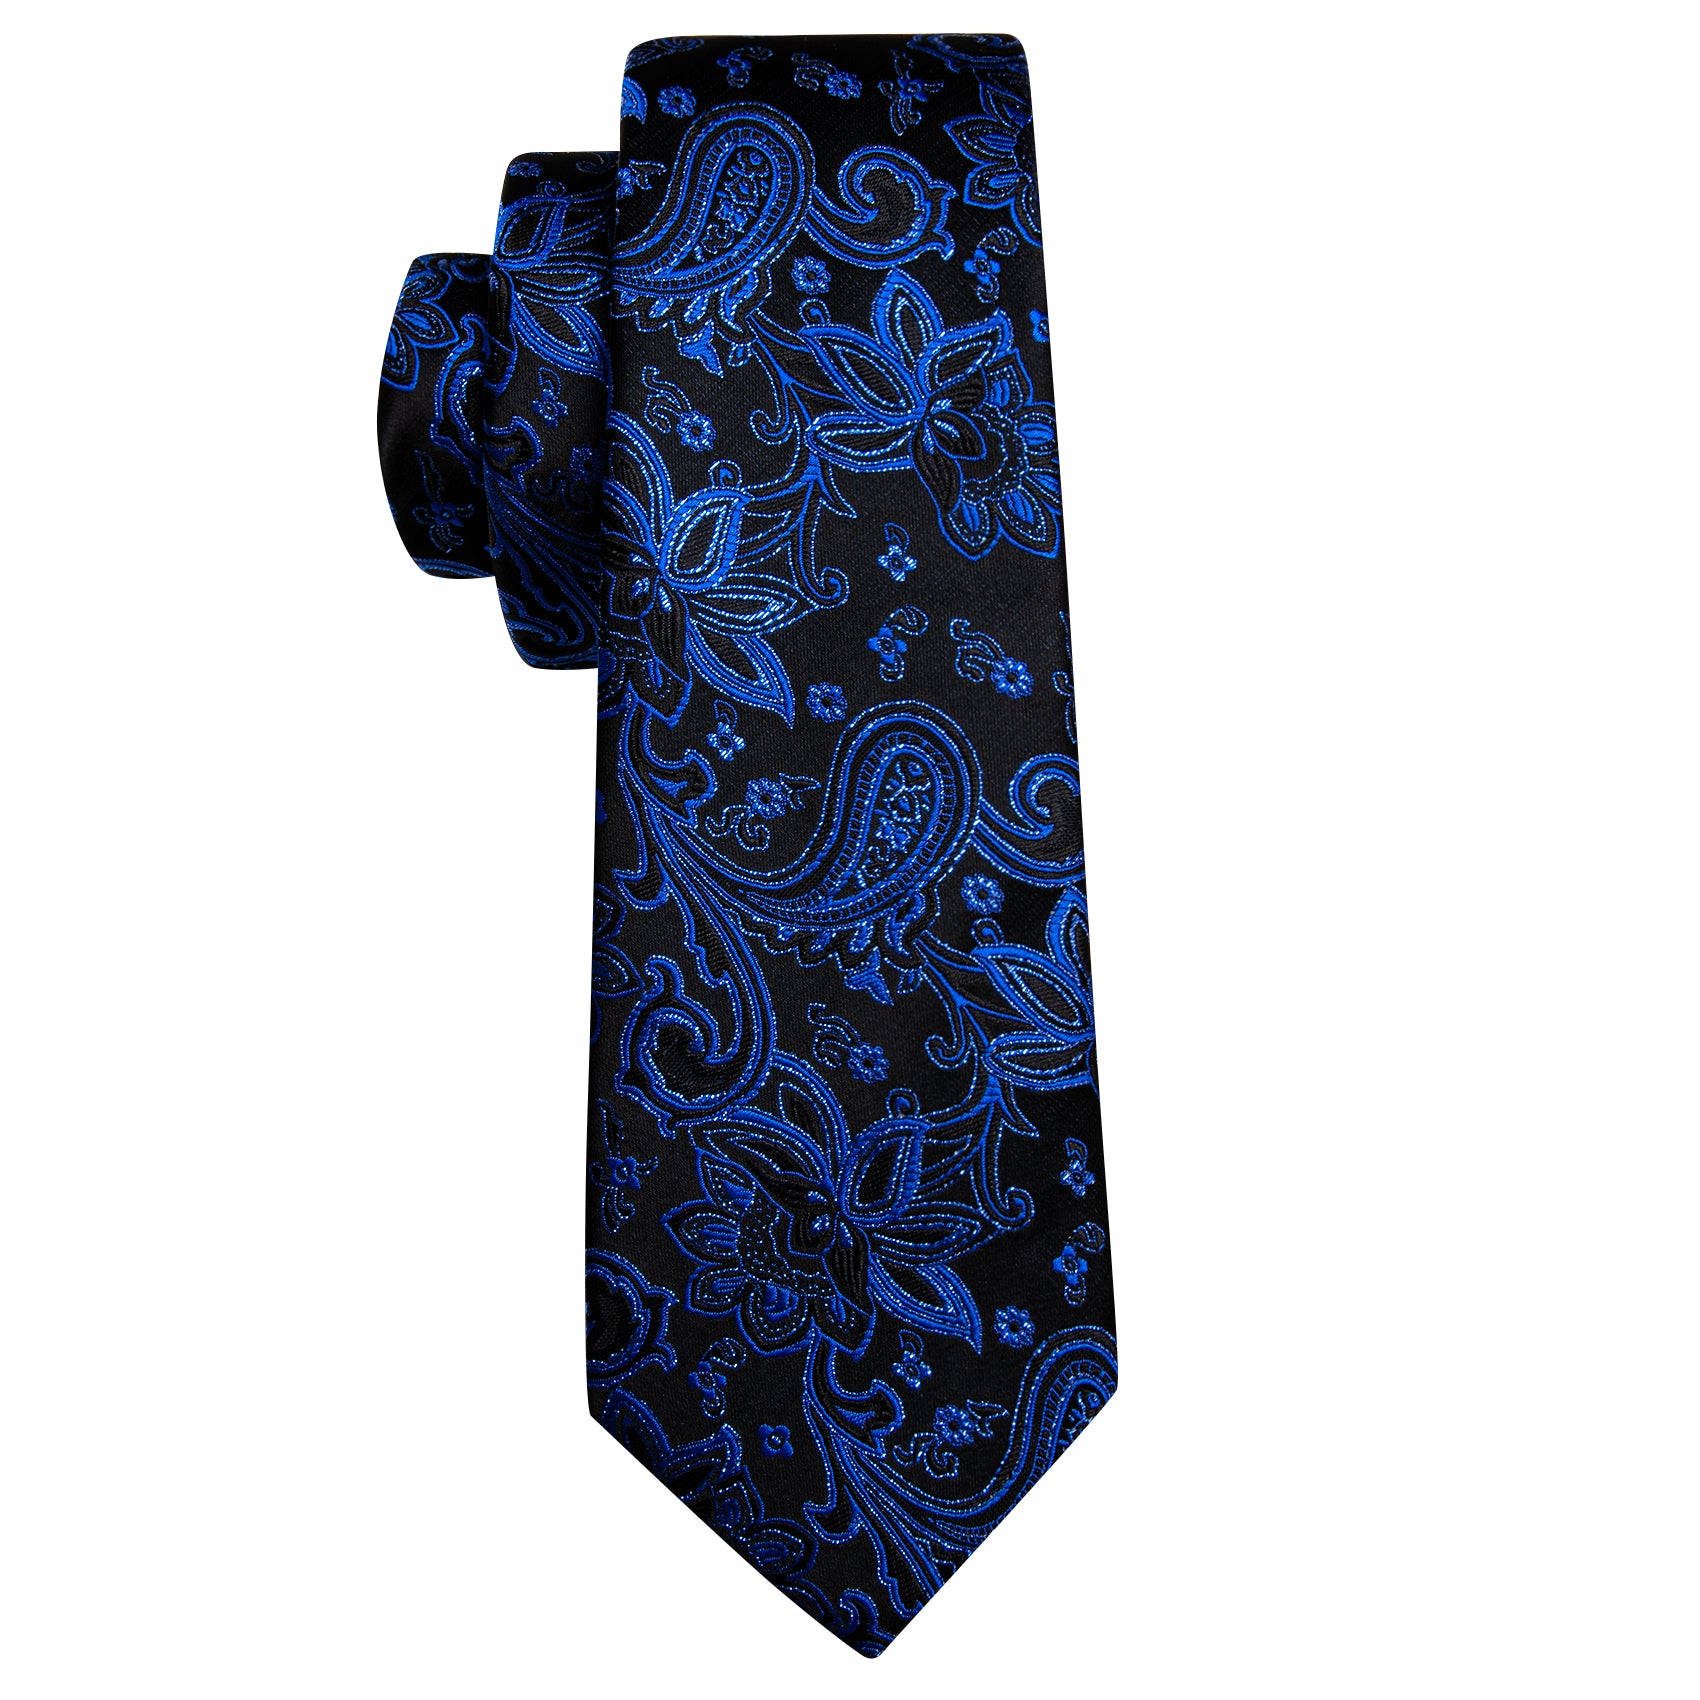 Luxury Men's Blue Floral Silk Vest